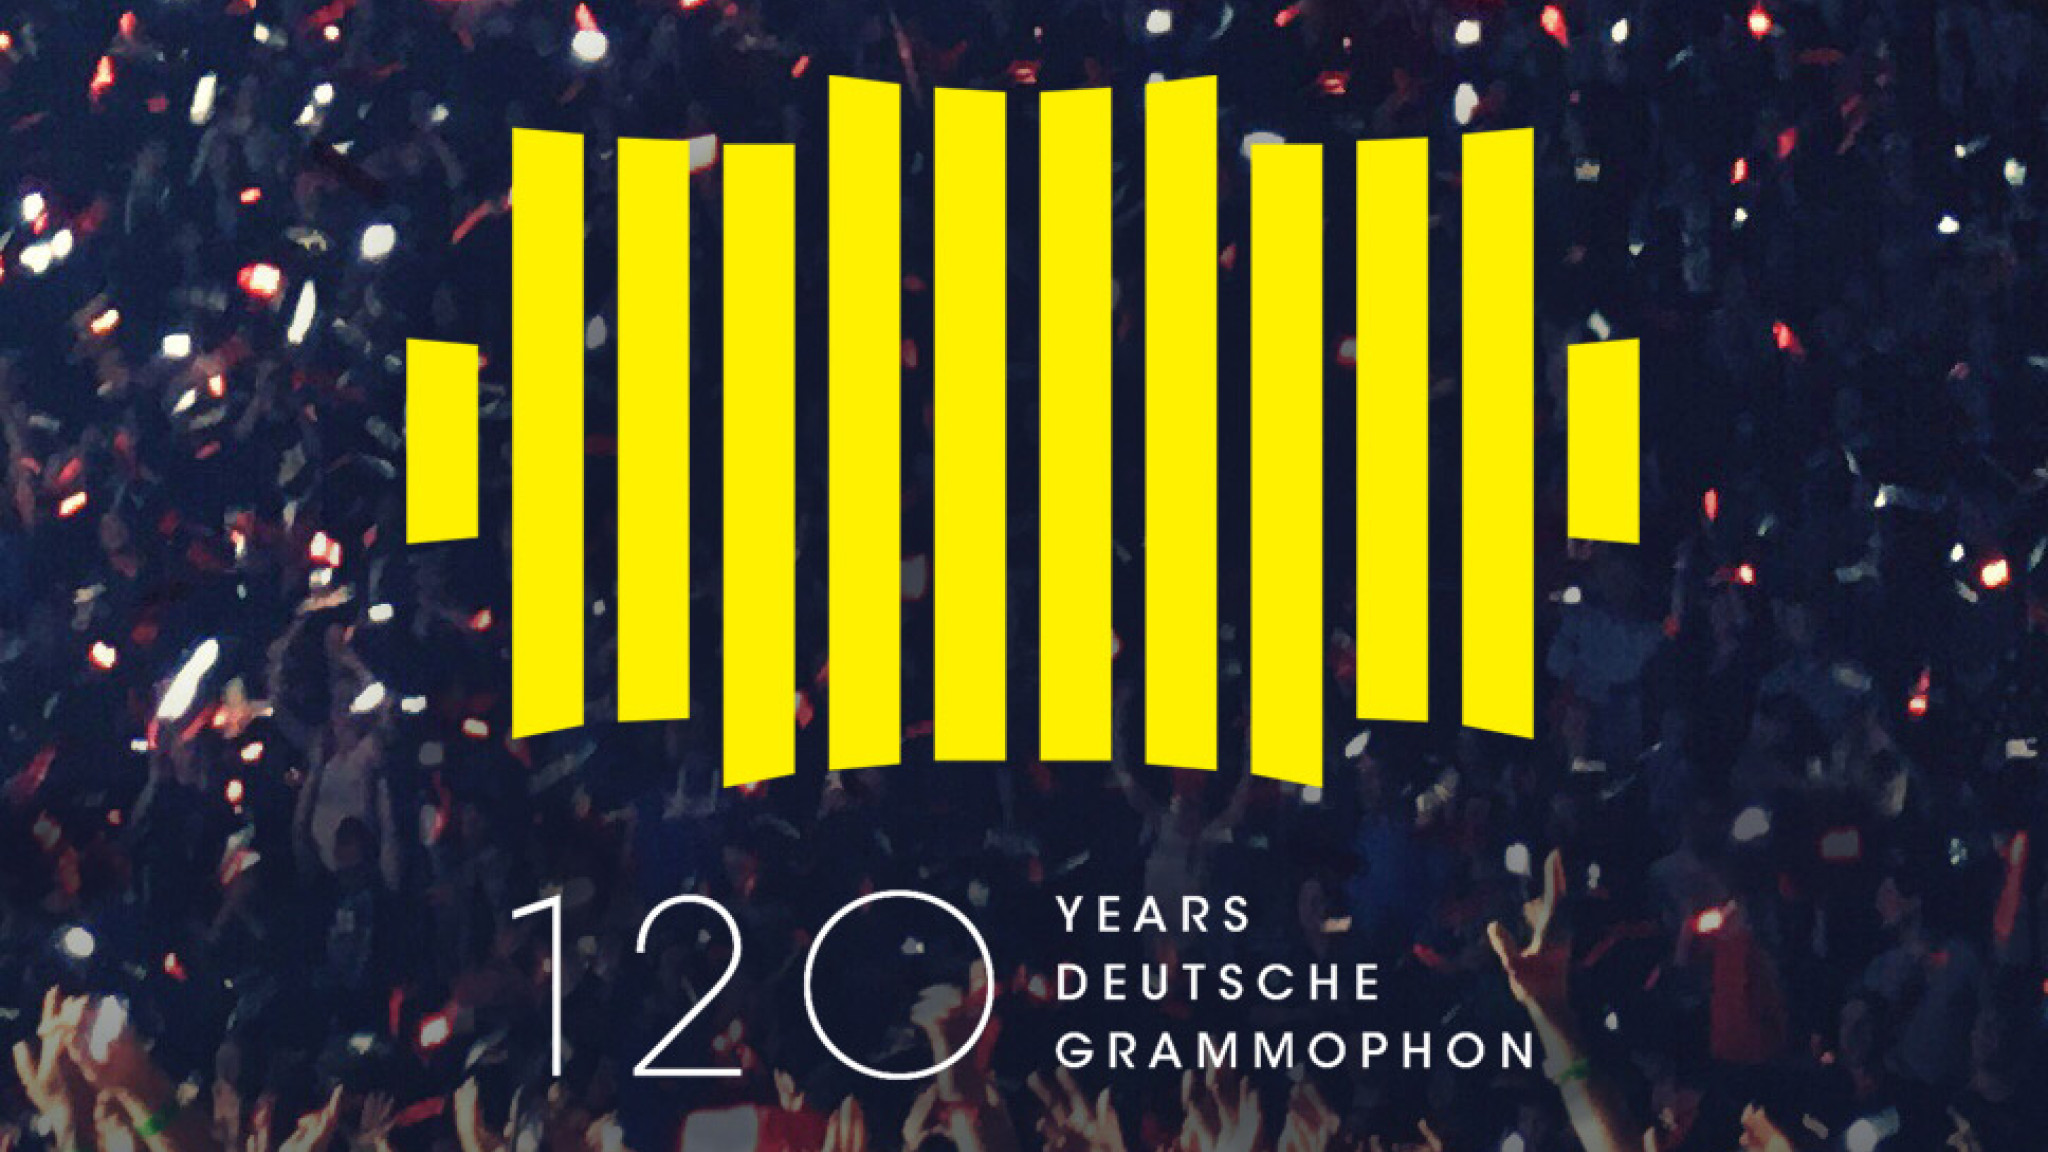 120 Years Deutsche Grammophon